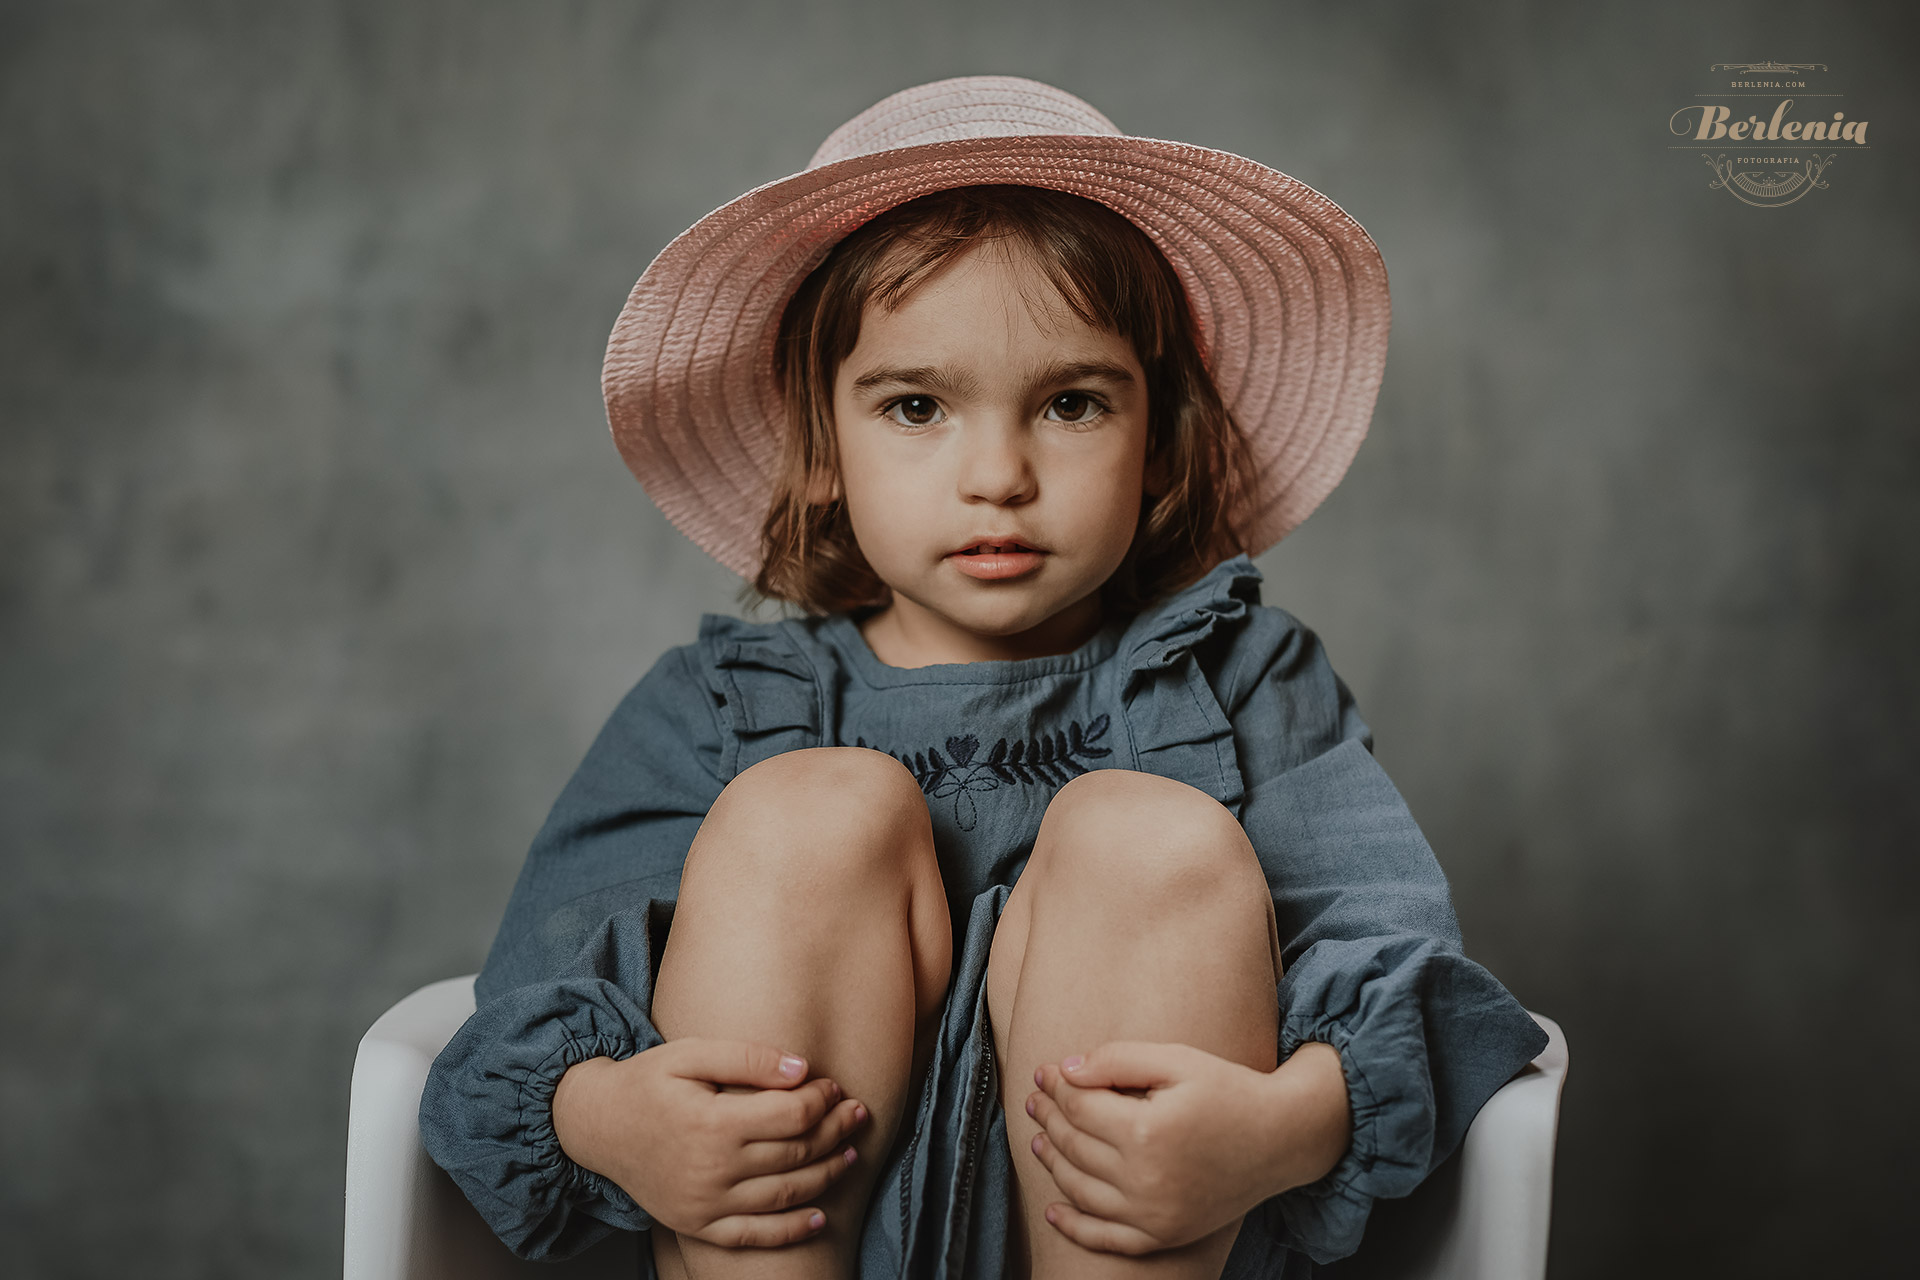 Sesión de fotos infantil en estudio (3 años) - Villa Urquiza, CABA, Buenos Aires, Argentina - Berlenia Fotografía - 11